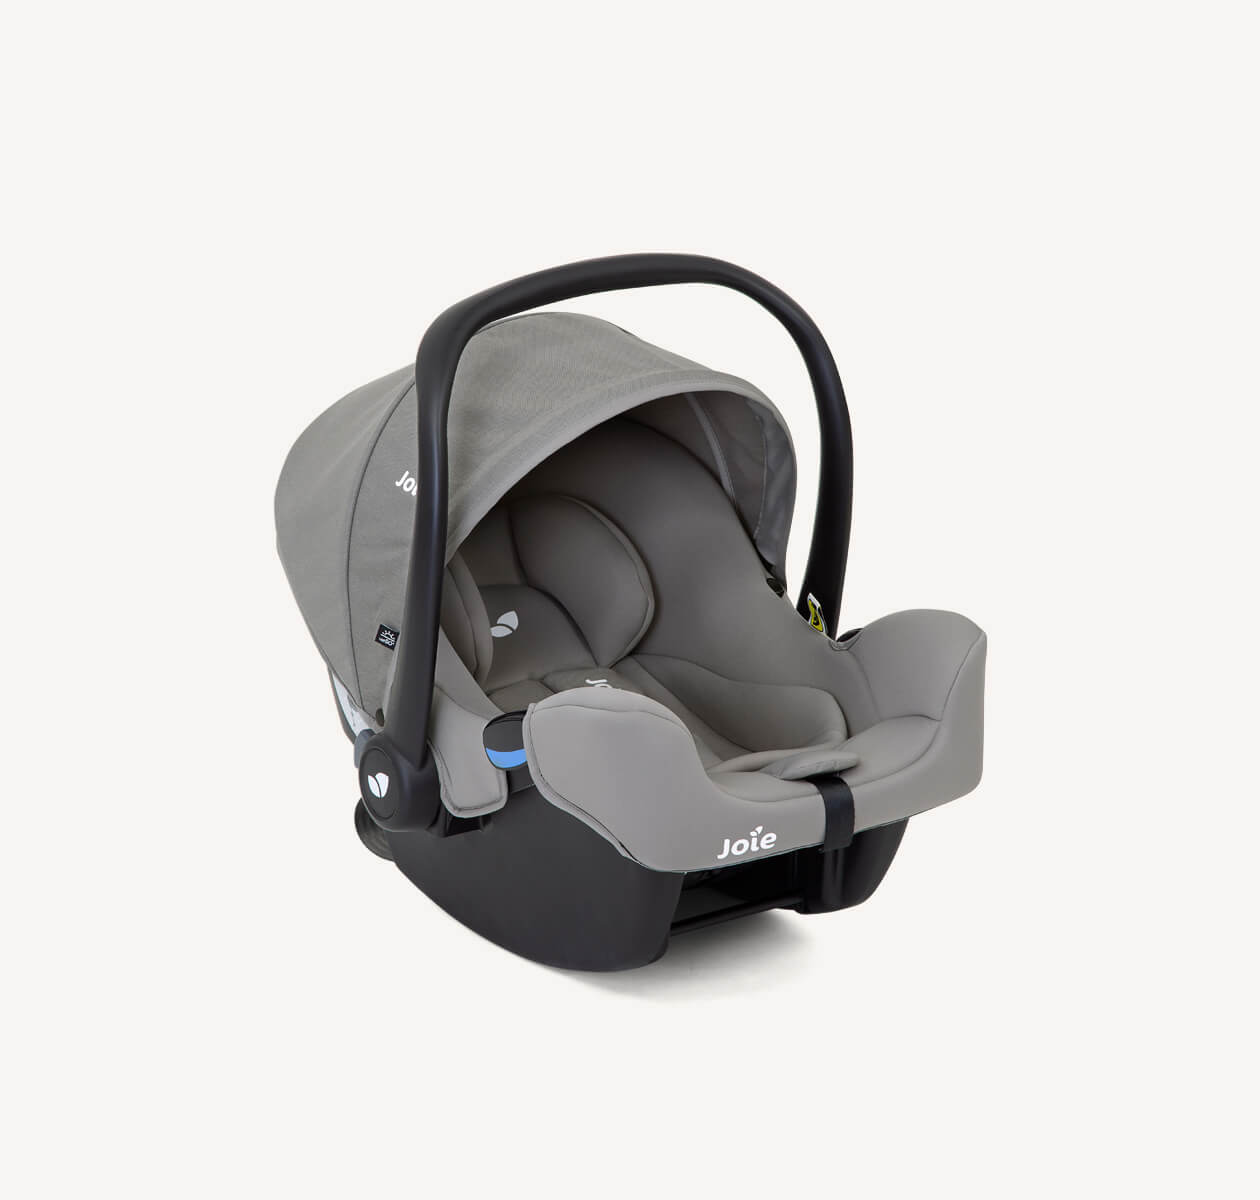 Siège auto pour bébé Joie I-snug, coloris gris, avec pare-soleil et poignée relevés en position à angle droit.